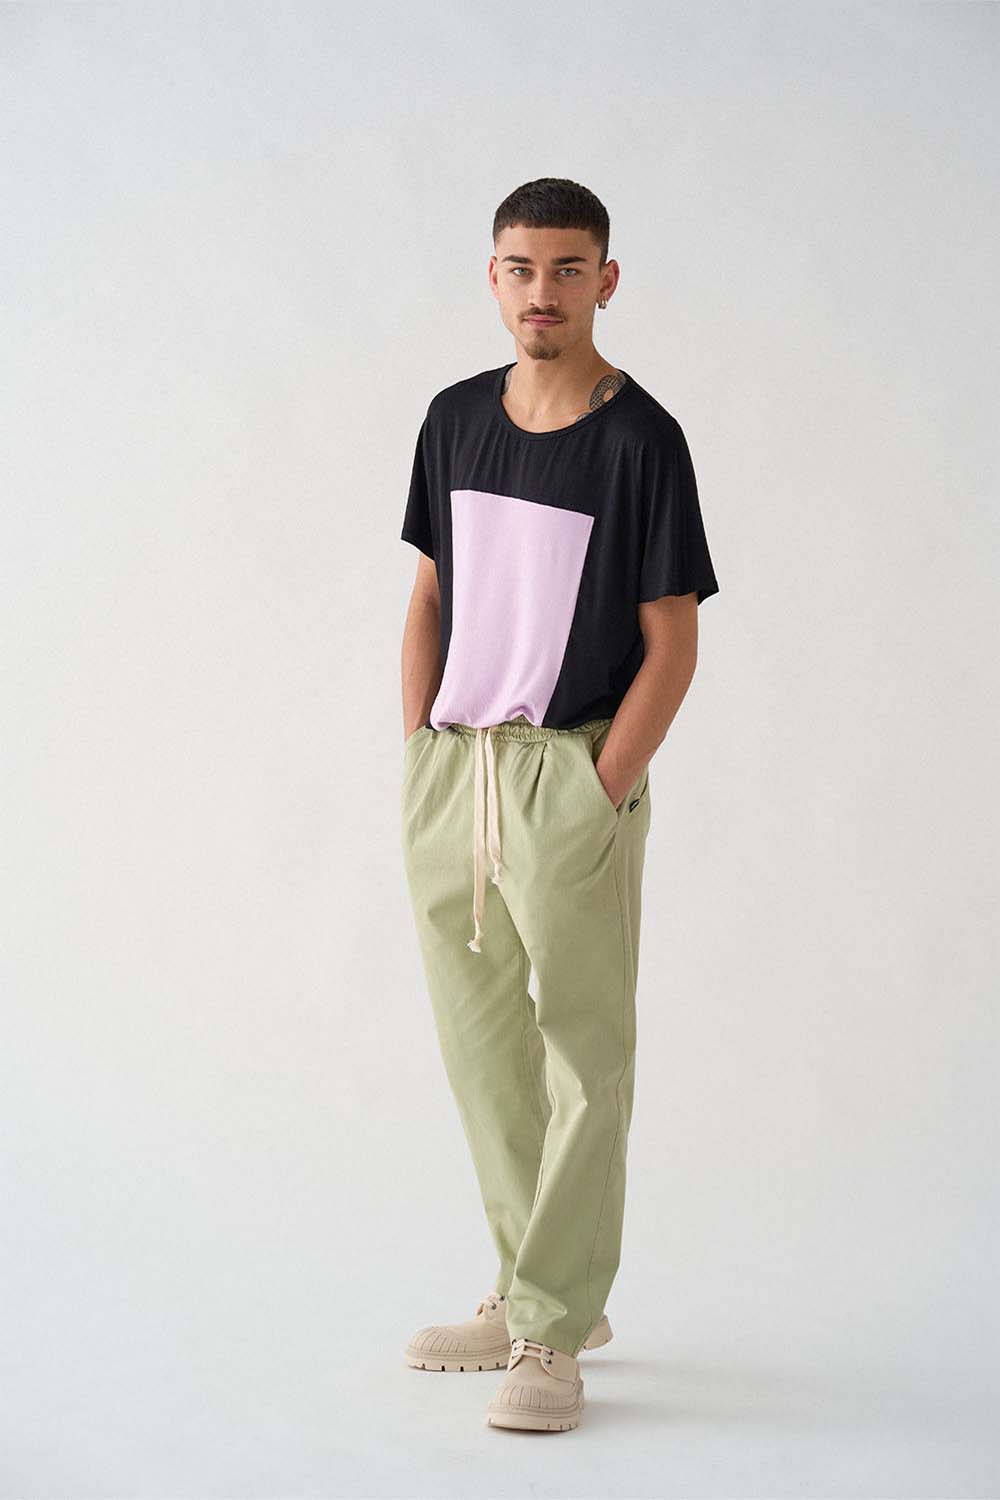 imagen de lado del modela con camiseta quadrilaterus negro y lila y pantalón worker verde